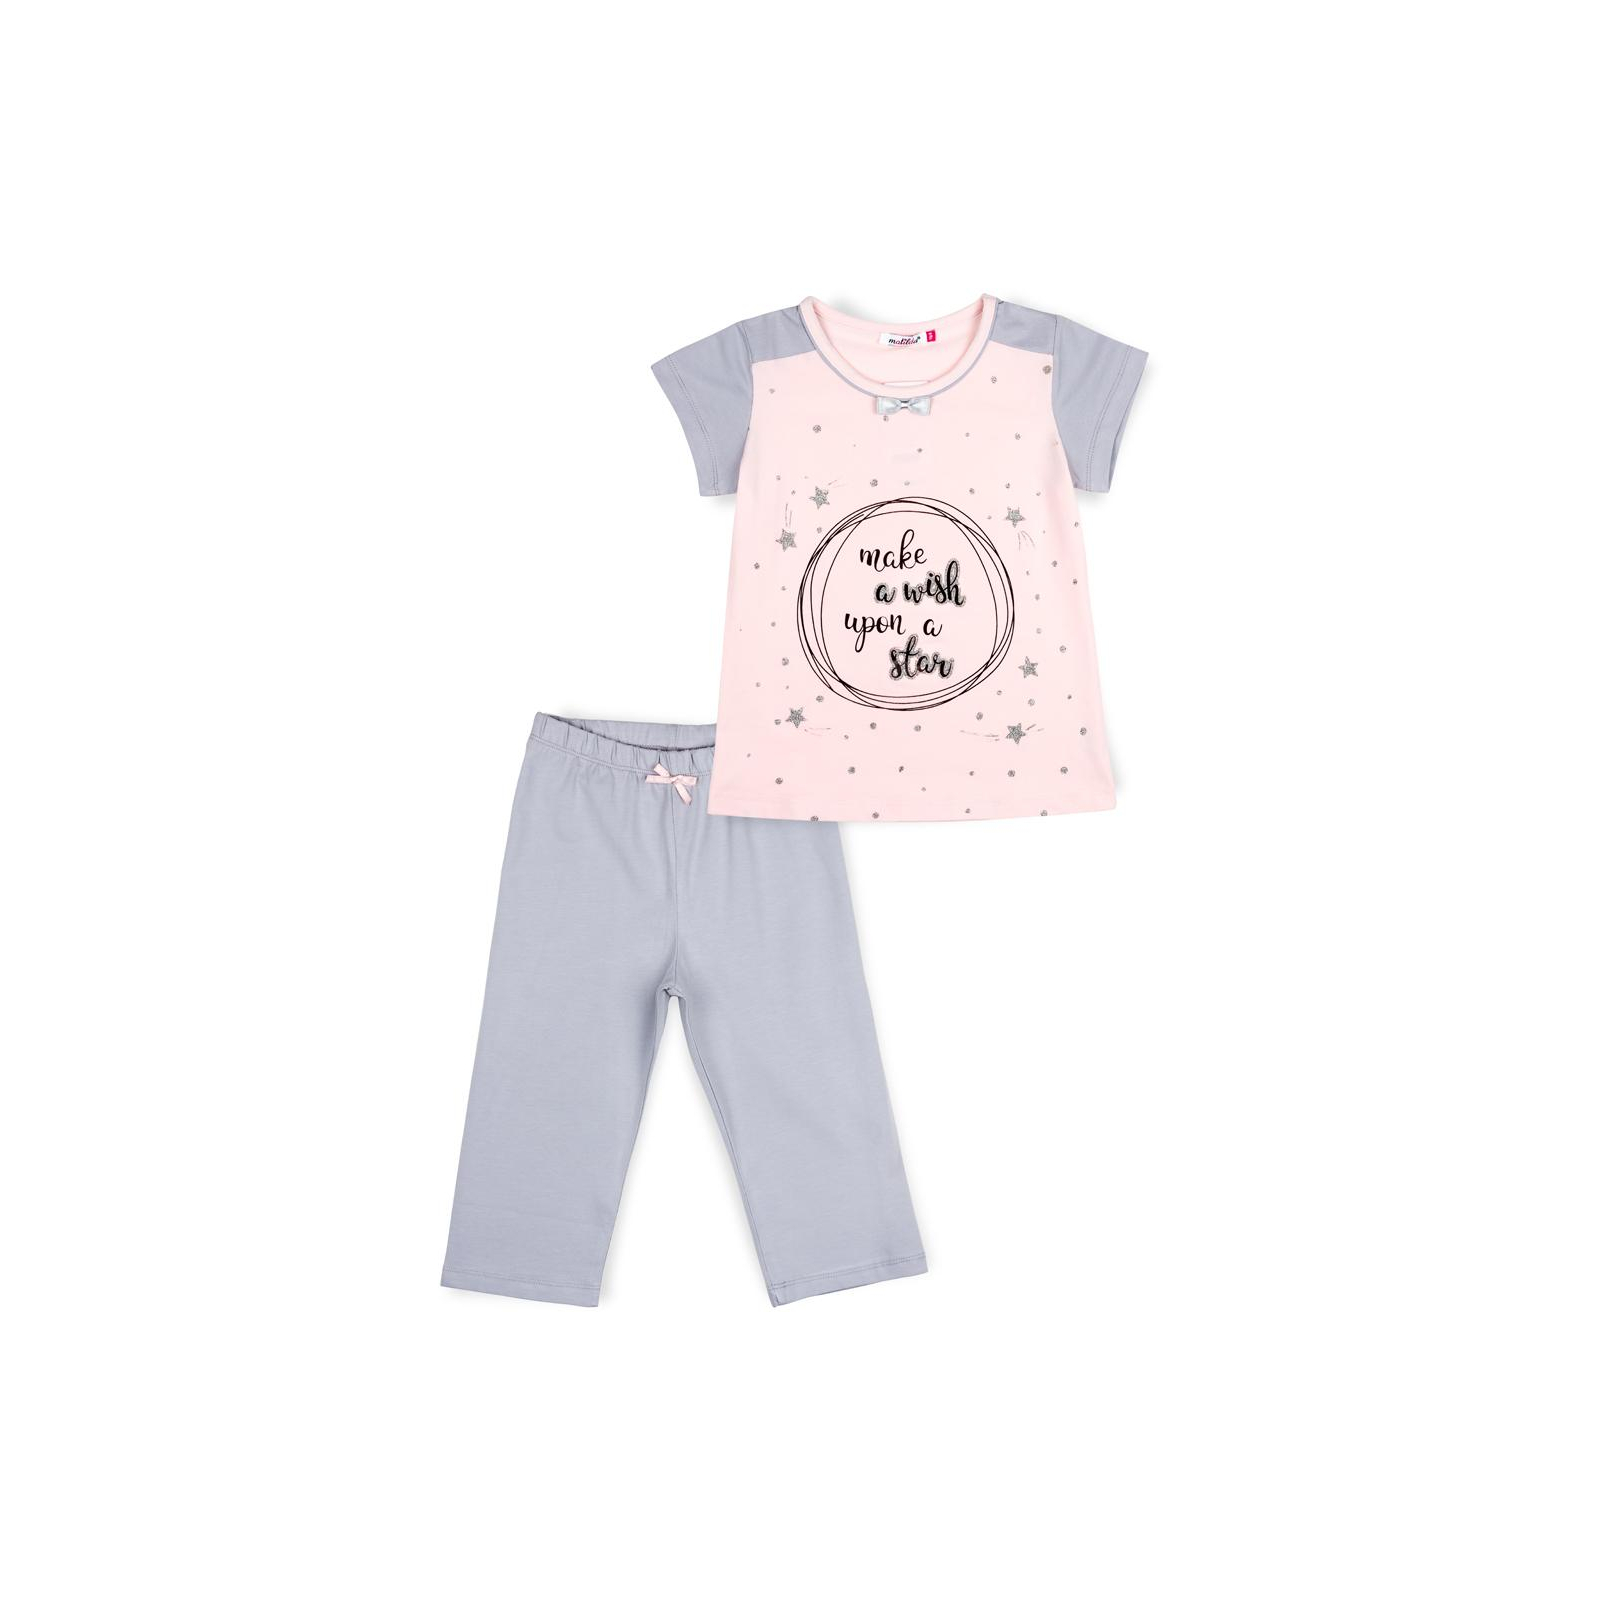 Пижама Matilda со звездочками (7991-122G-pink)